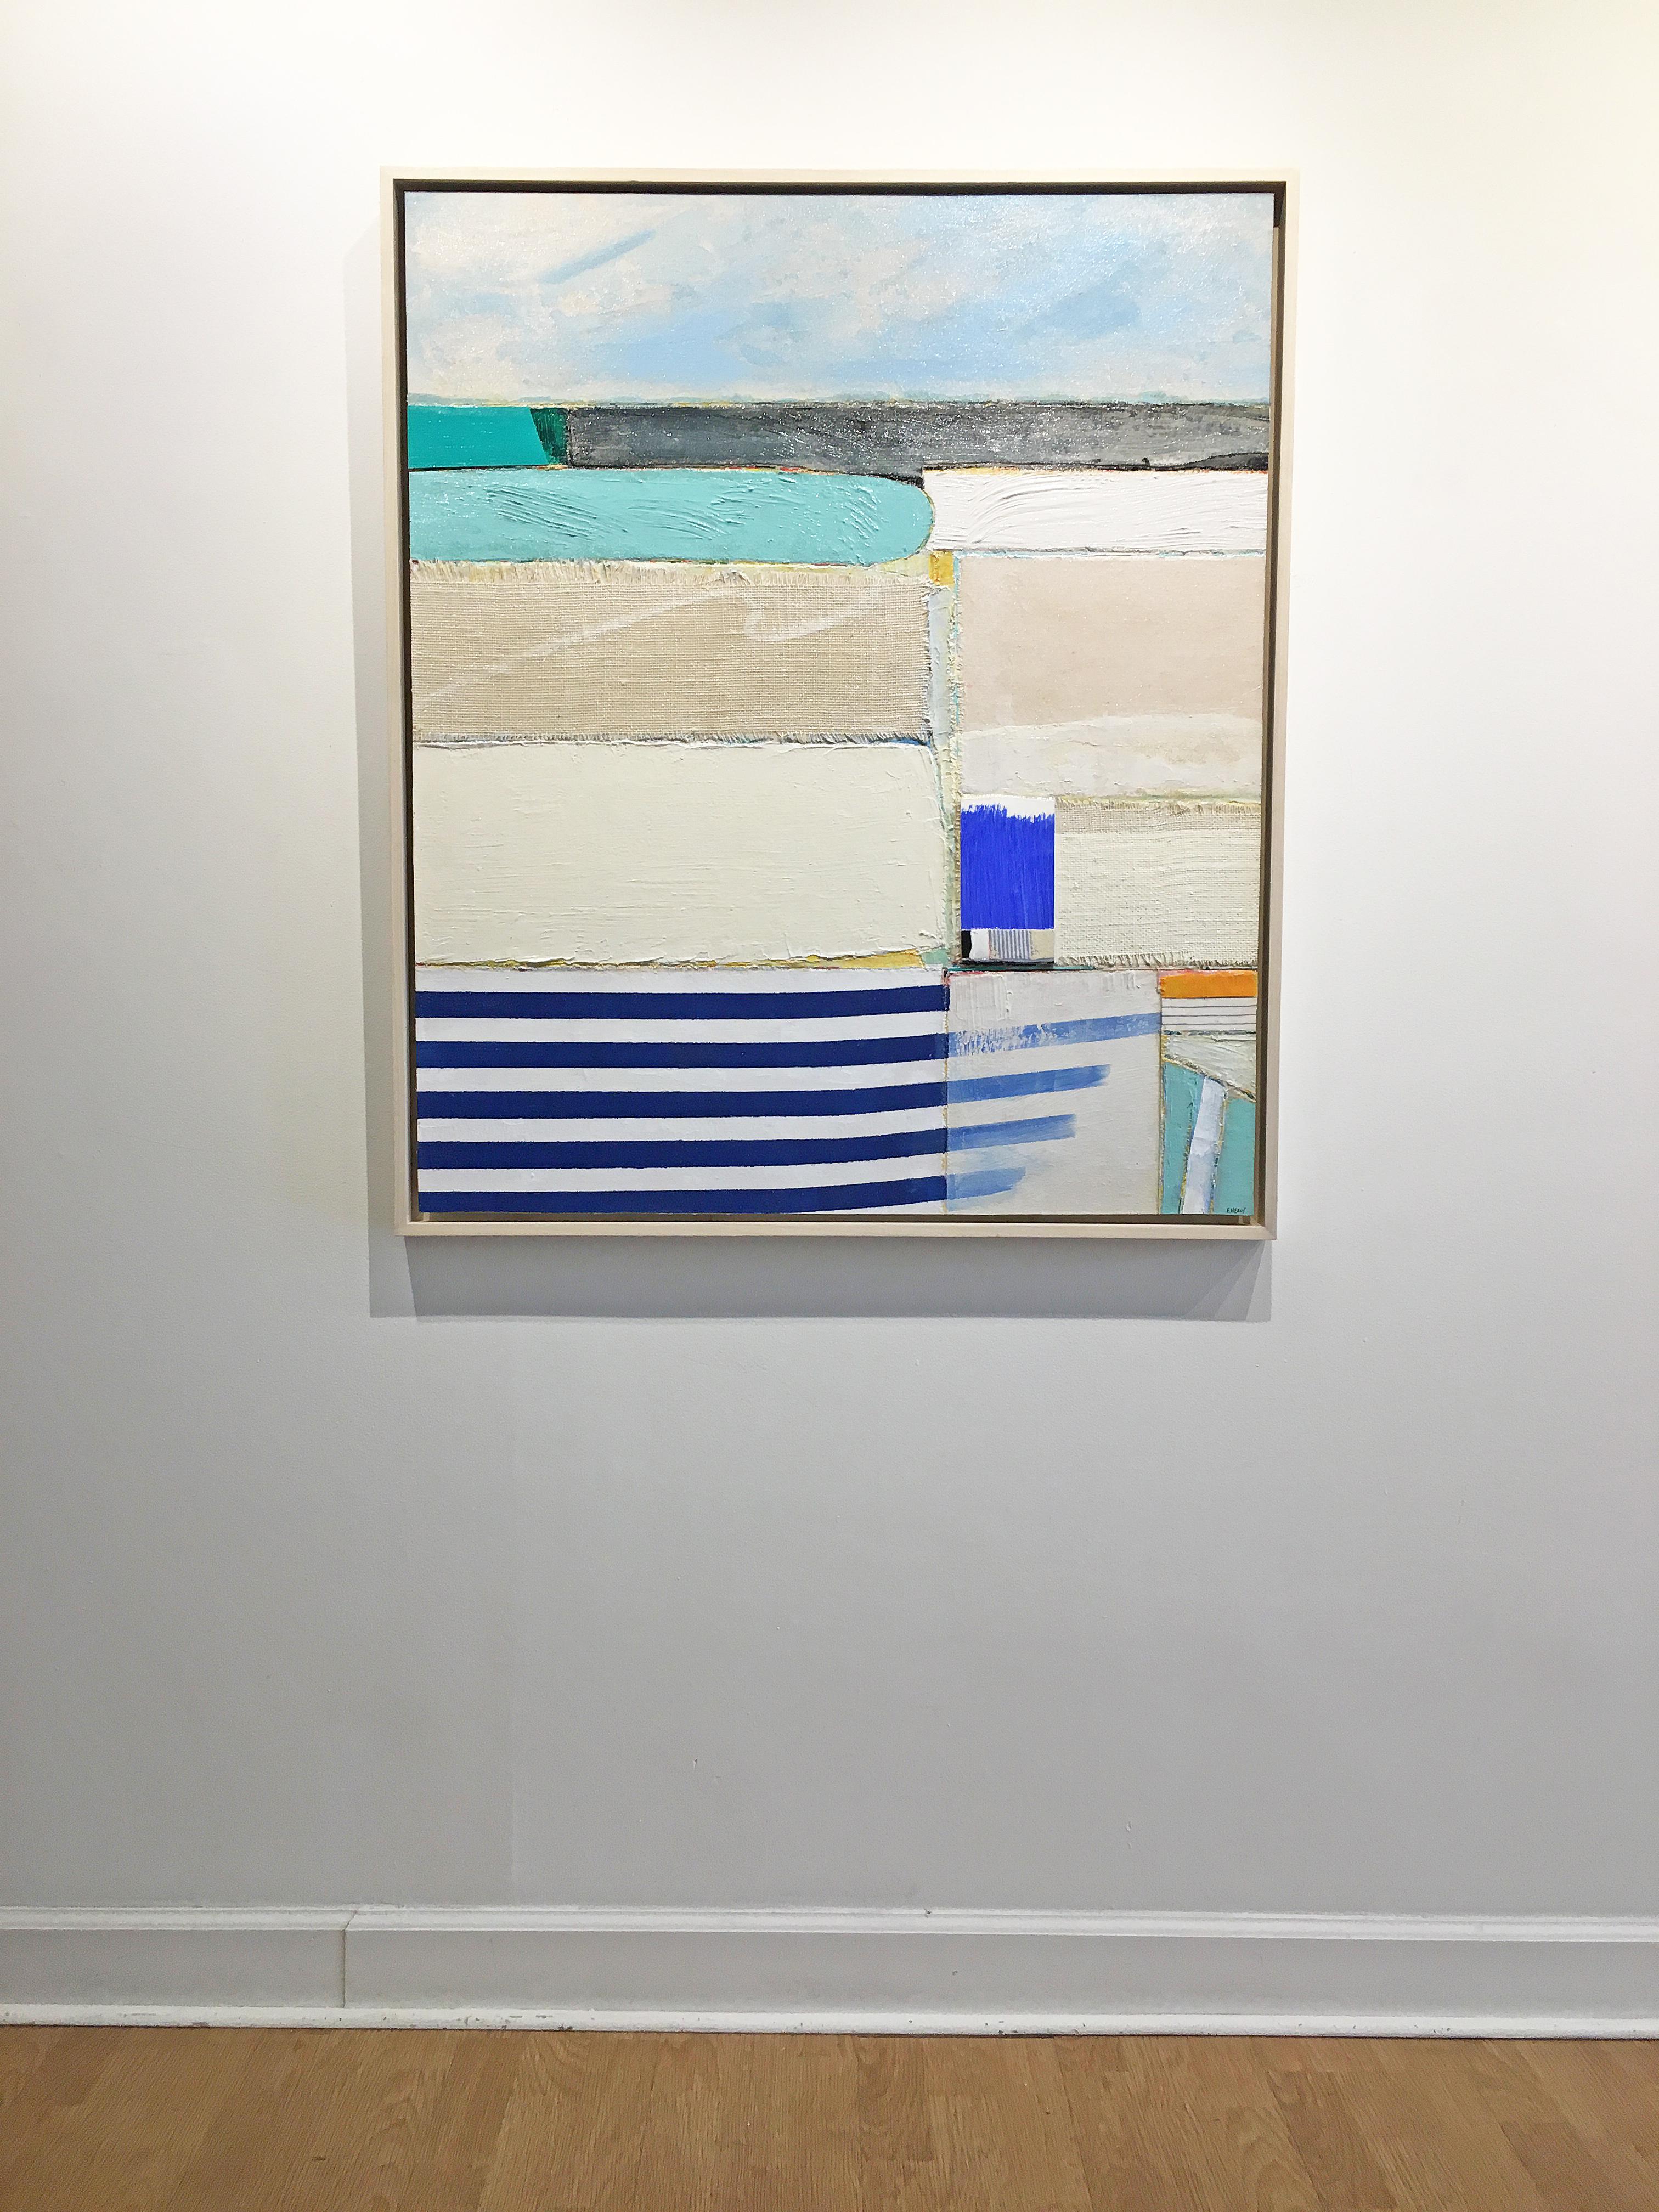 Coastal painting, Mixed media abstract, Eugene Healy, Emerald Isle 1